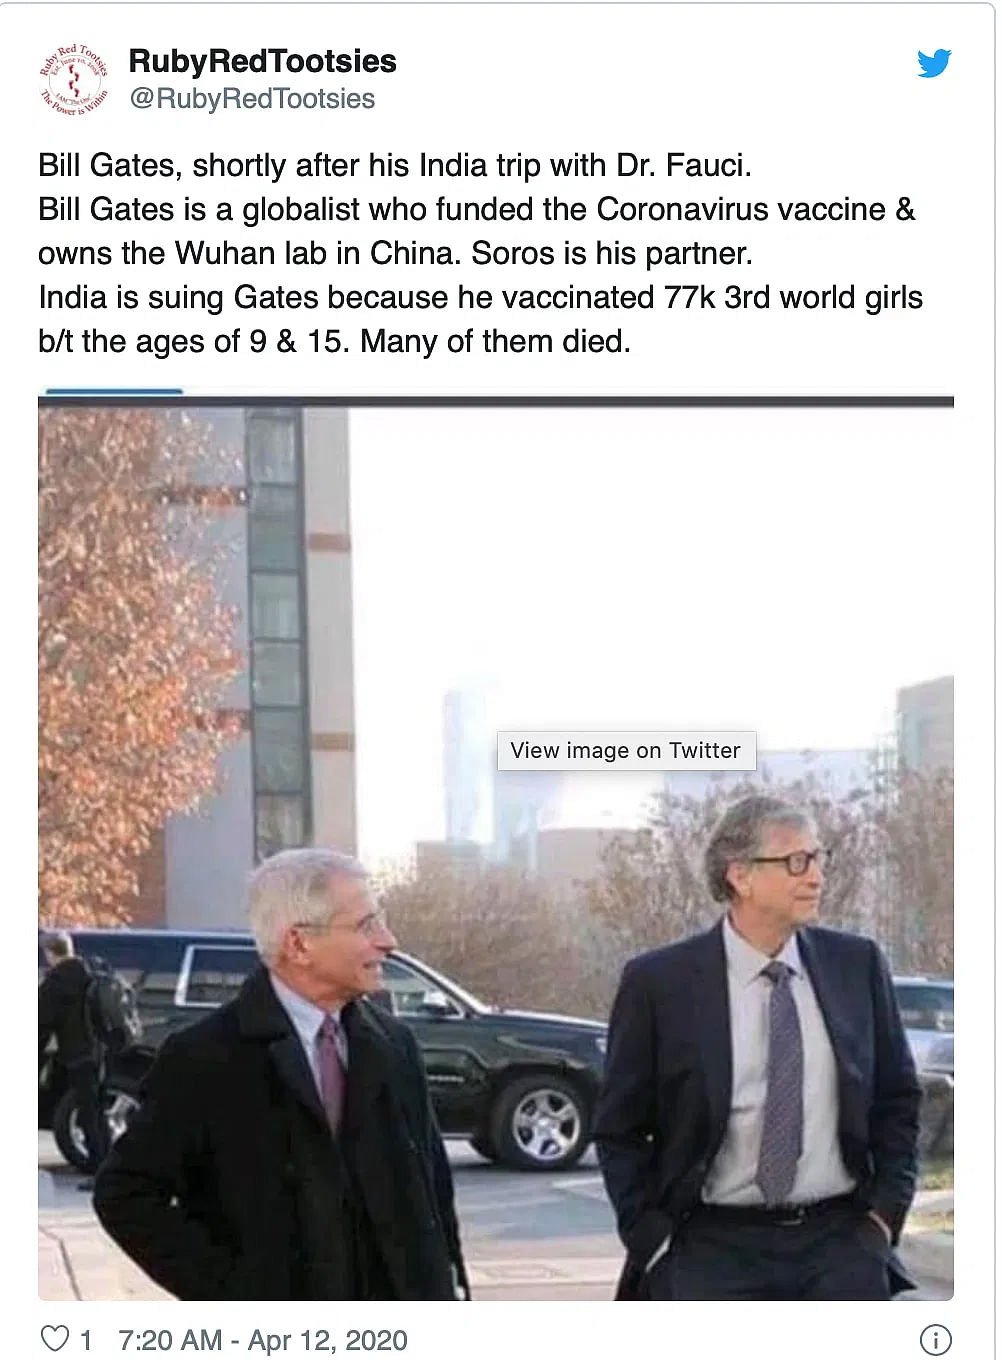 पोस्ट में ये भी दावा किया गया है कि ‘बिल गेट ने ही कोरोना वायरस वैक्सीन के लिए फंड दिया है